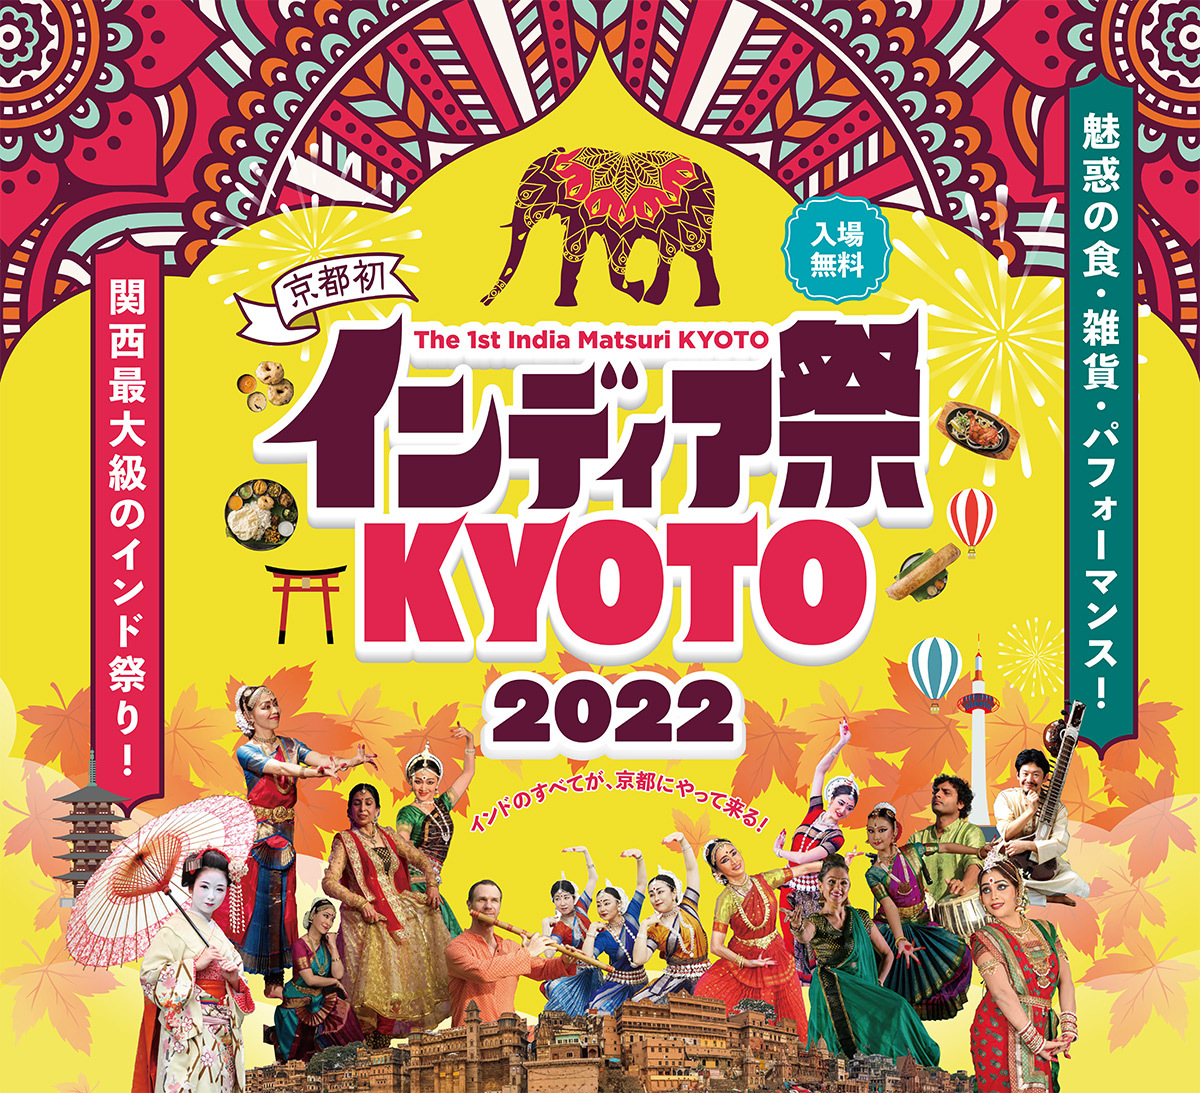 魅惑の食・雑貨・パフォーマンスが集結！
関西最大級のインド祭が京都初開催　
「インディア祭KYOTO2022」で“インドのすべて”が京都に